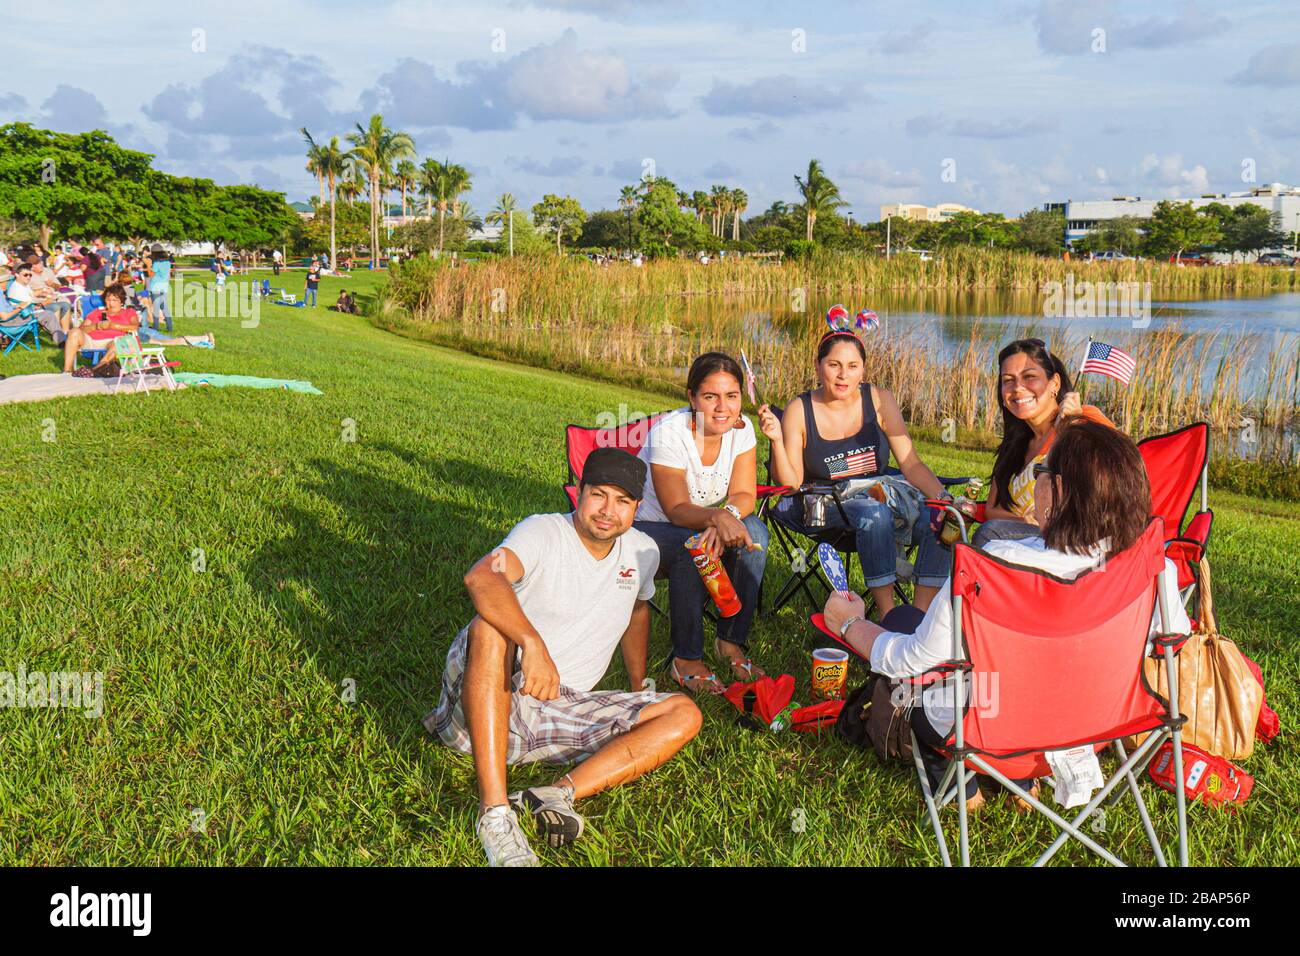 Miami, Florida, Doral, J. Parco di C. Bermudez, quarto 4 luglio famiglie ispaniche genitori figli figli, uomo uomini maschio adulti, donna fema Foto Stock